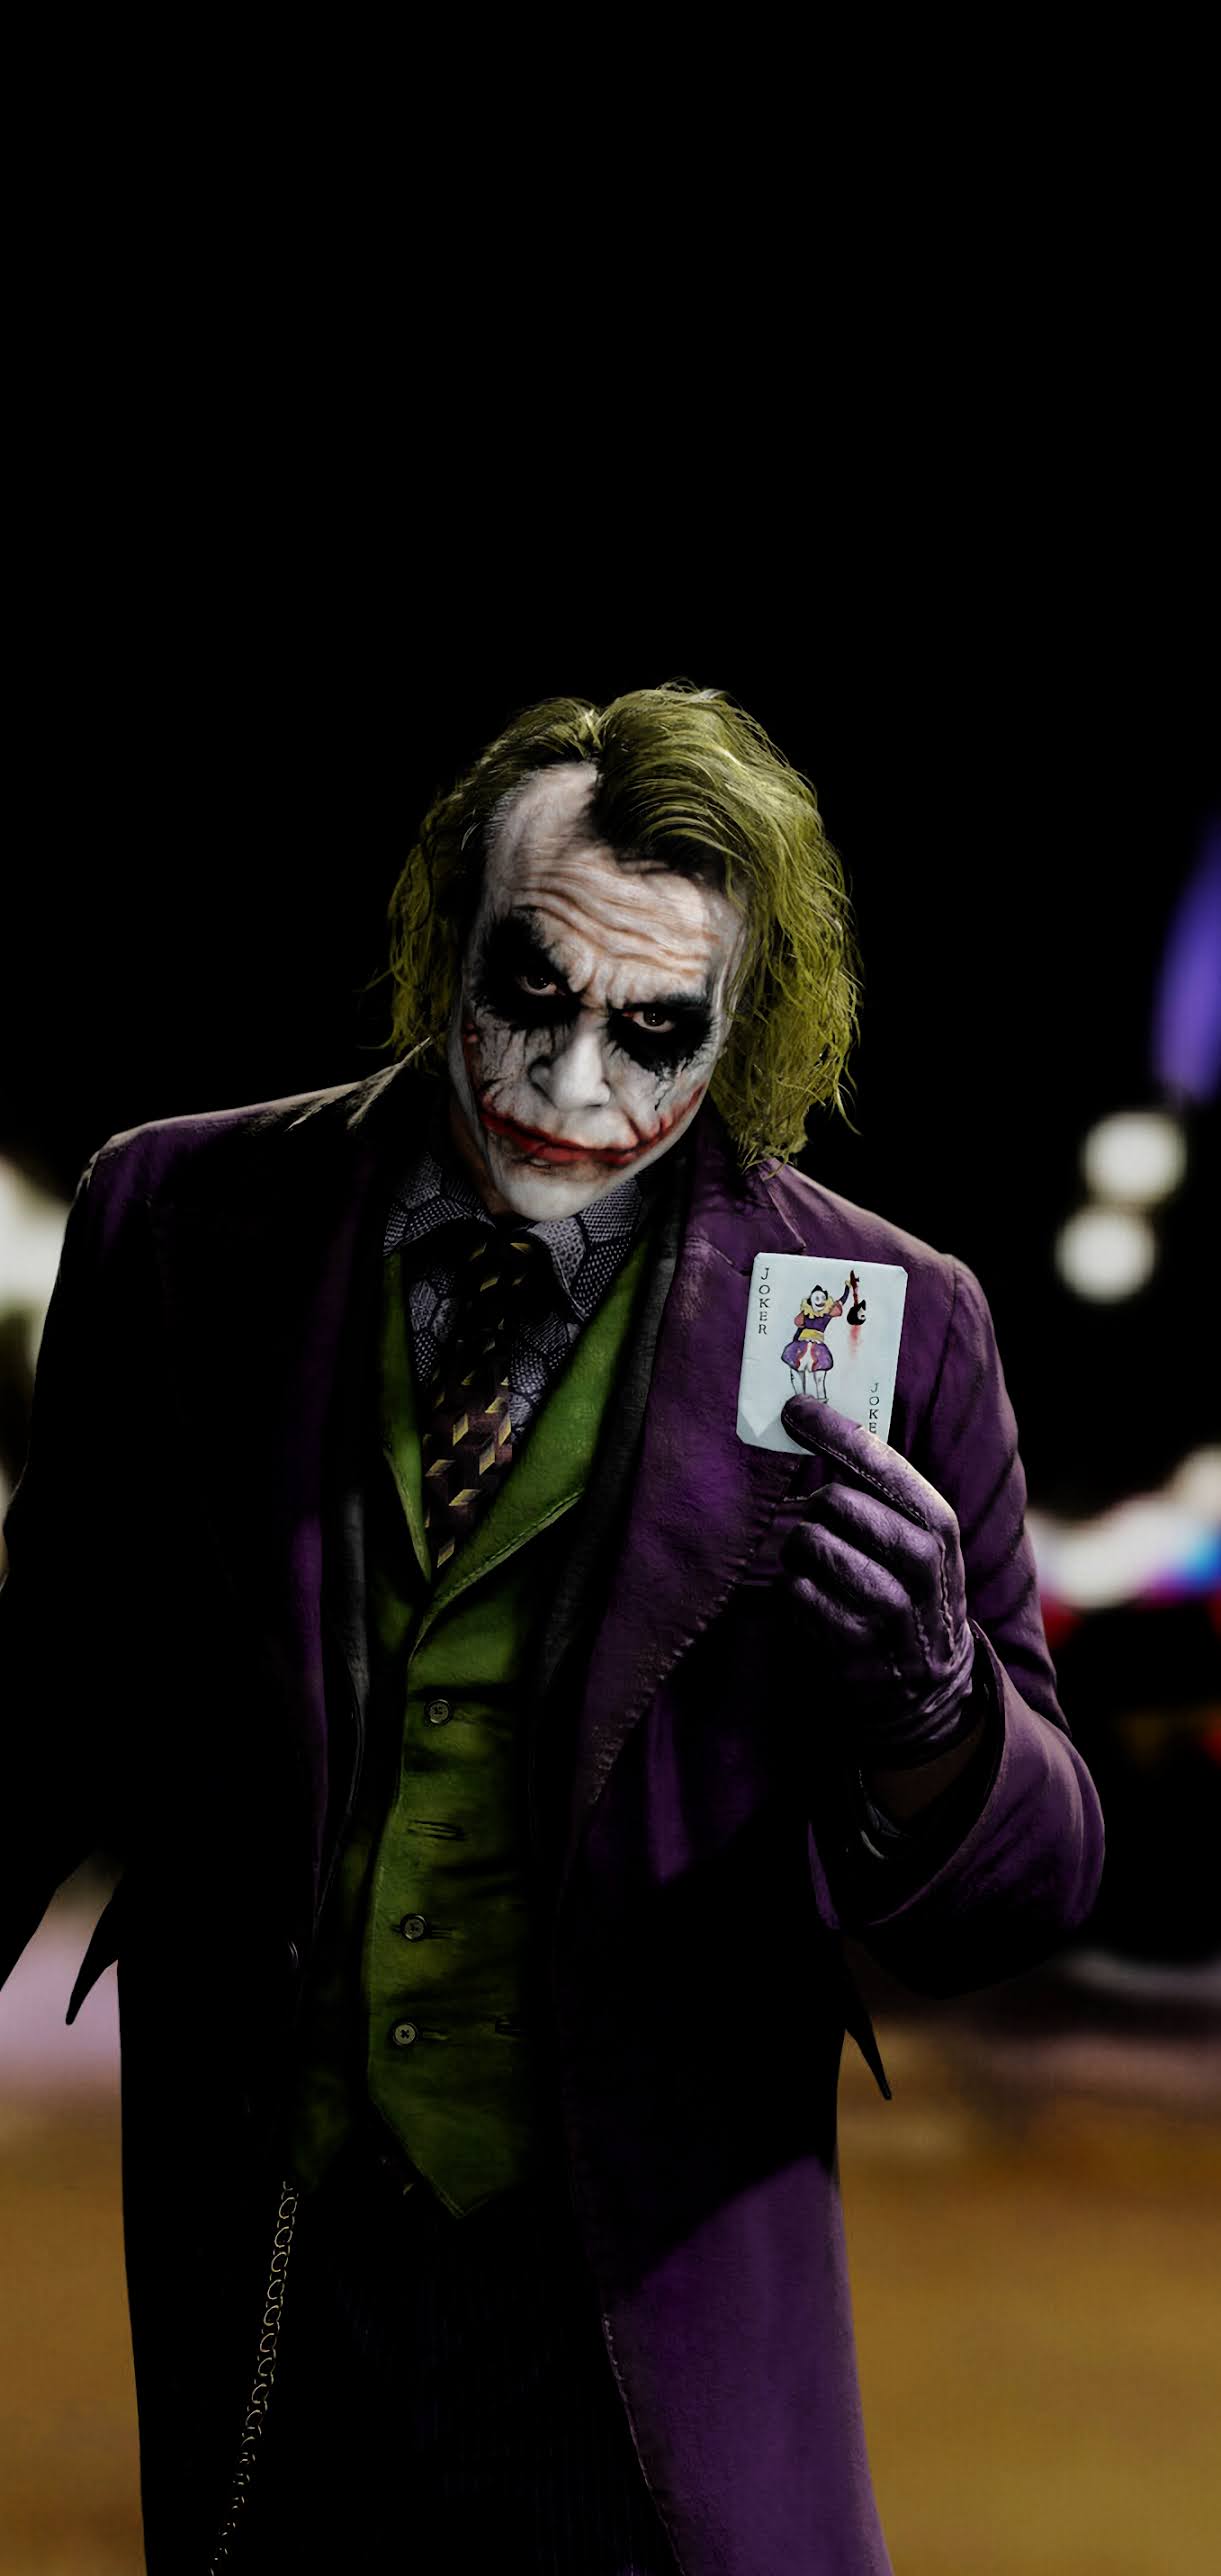 HD wallpaper Joker Joker 2019 Movie Joaquin Phoenix fan art drawing   Wallpaper Flare